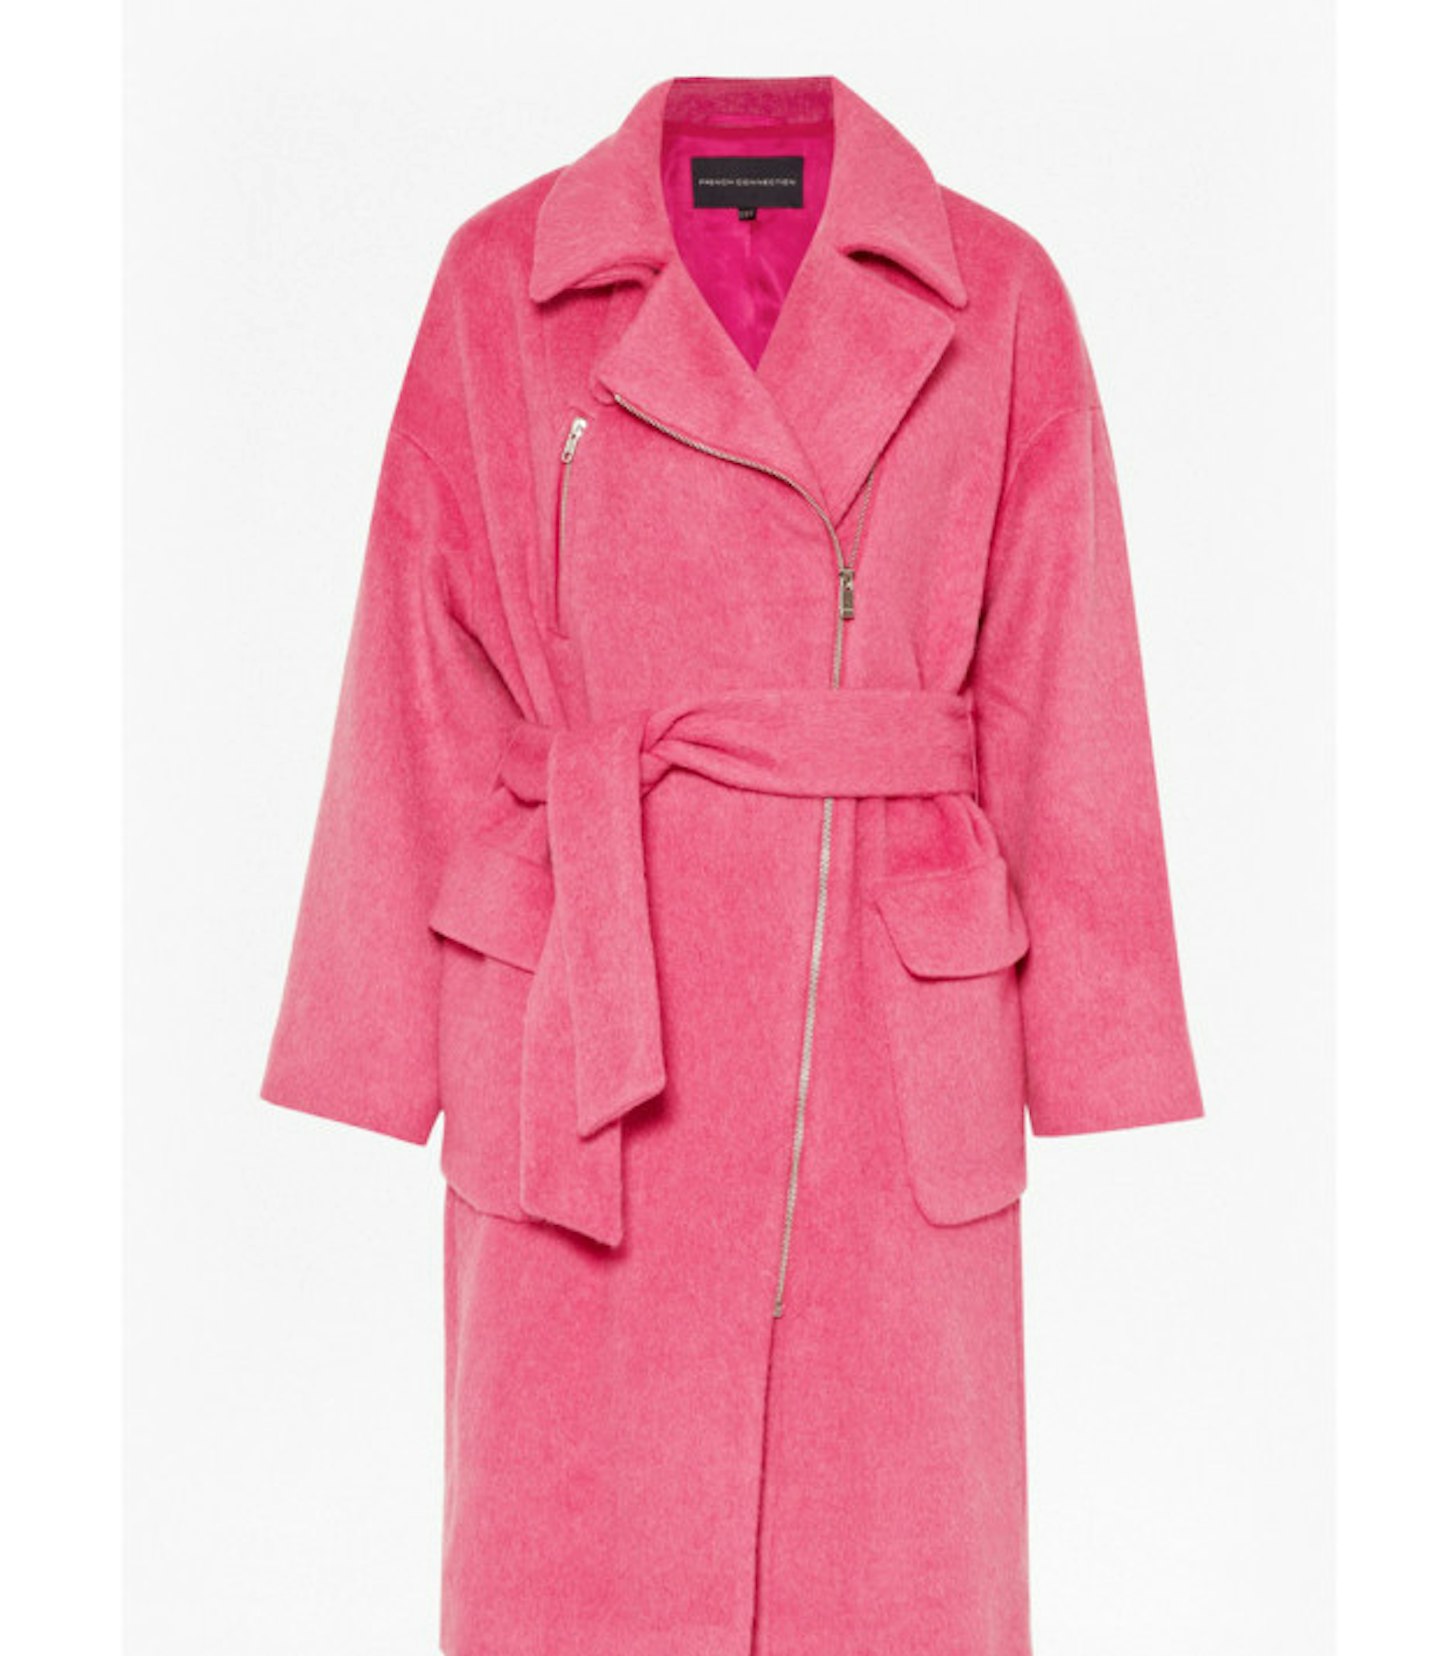 Pink belted coat